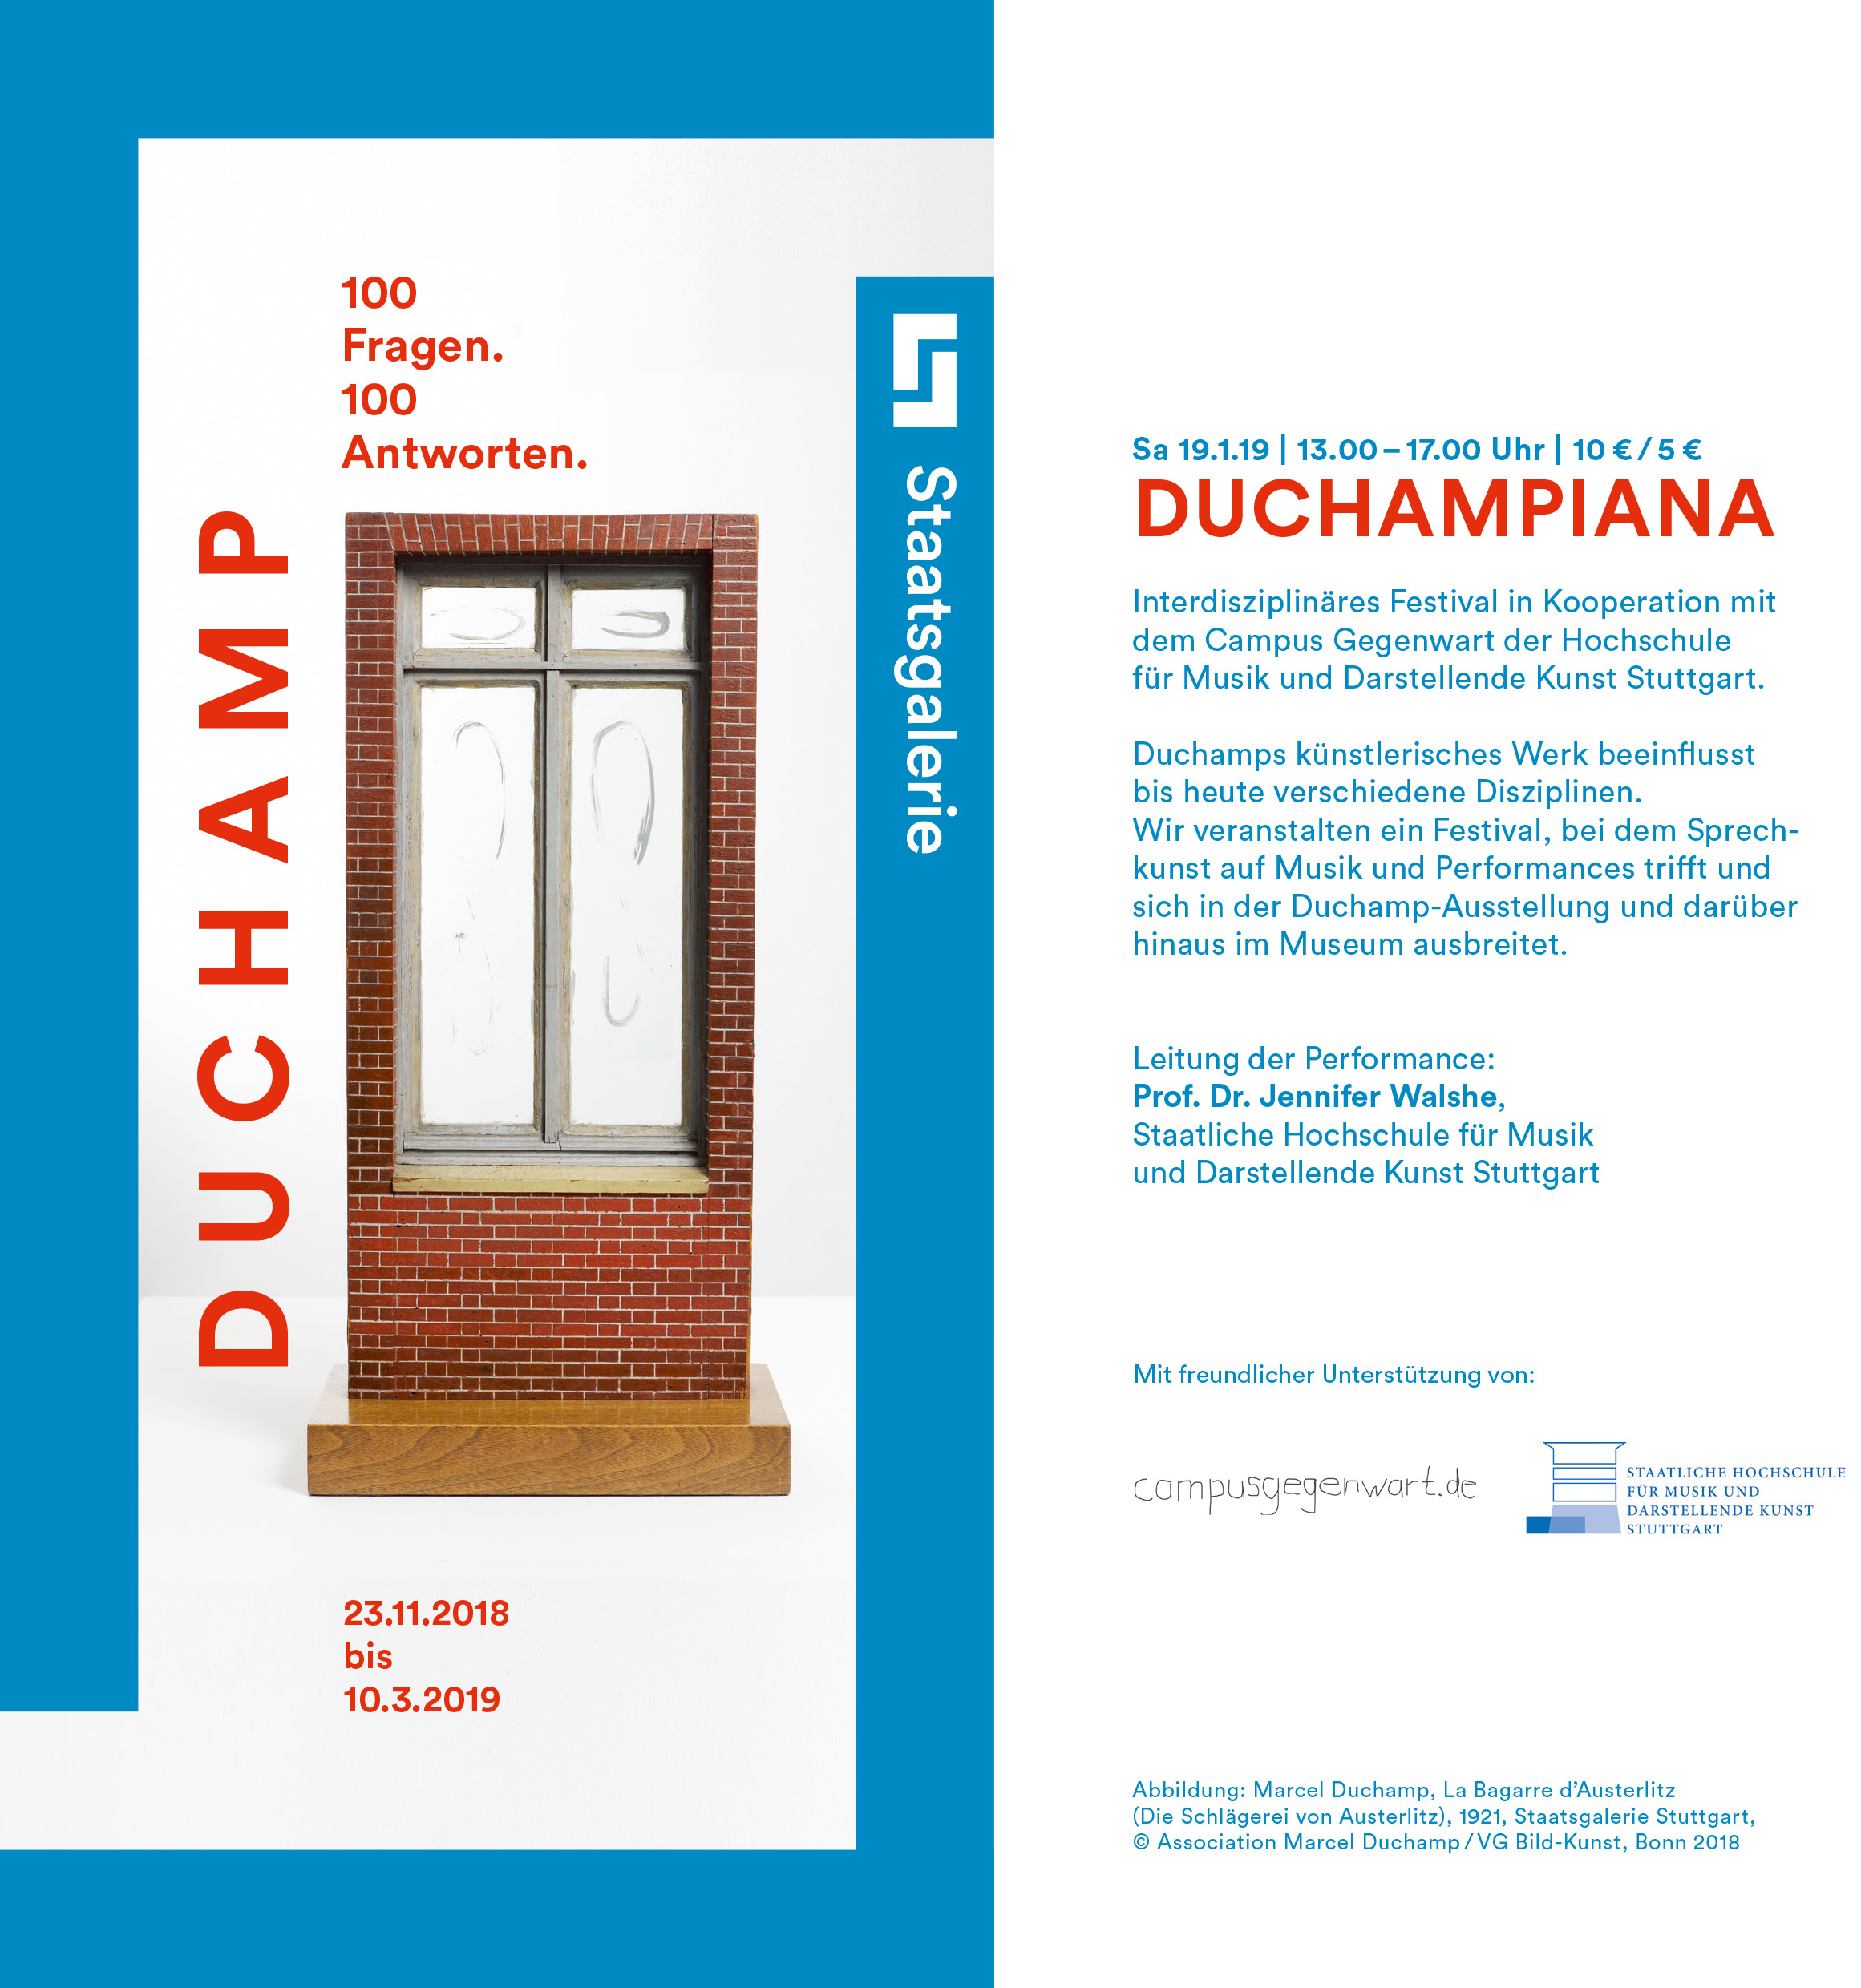 Abb: Flyer (Abbildung: Marcel Duchamp, La Bagarre d’Austerlitz (Die Schlägerei von Austerlitz), 1921, Staatsgalerie Stuttgart, © Association Marcel Duchamp / VG Bild-Kunst, Bonn 2018)